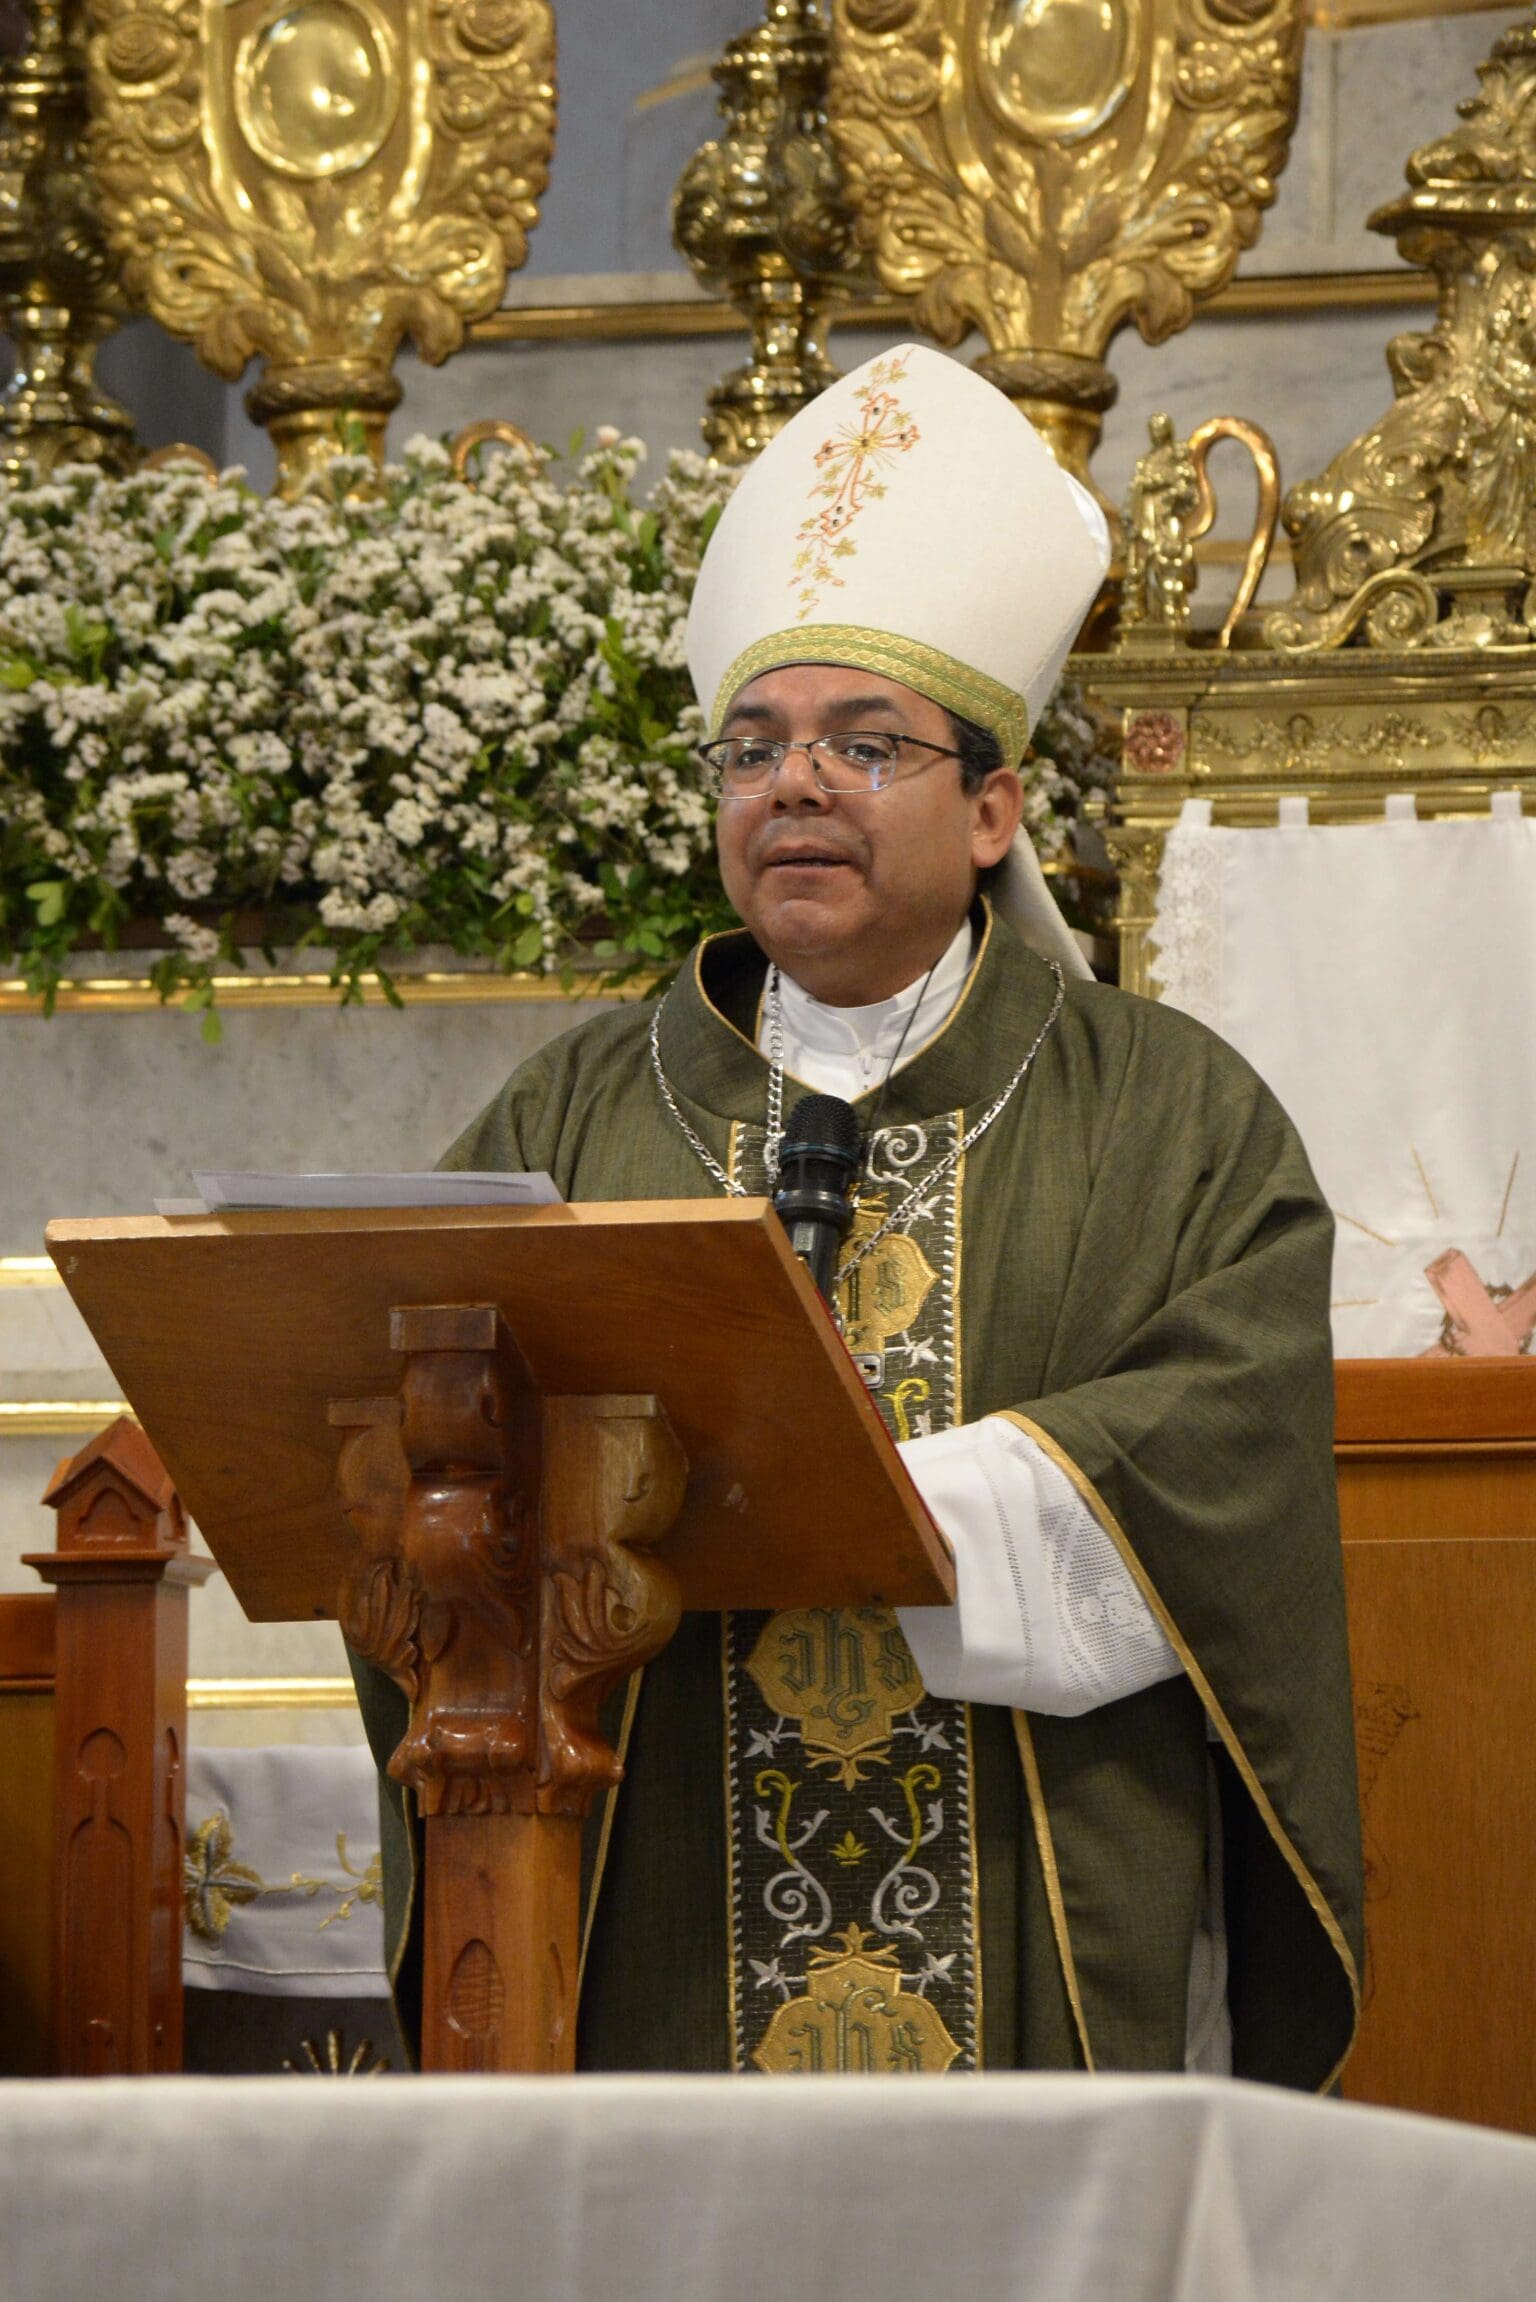 “Si quieren a México hagamos buenas votaciones”, pide Obispo